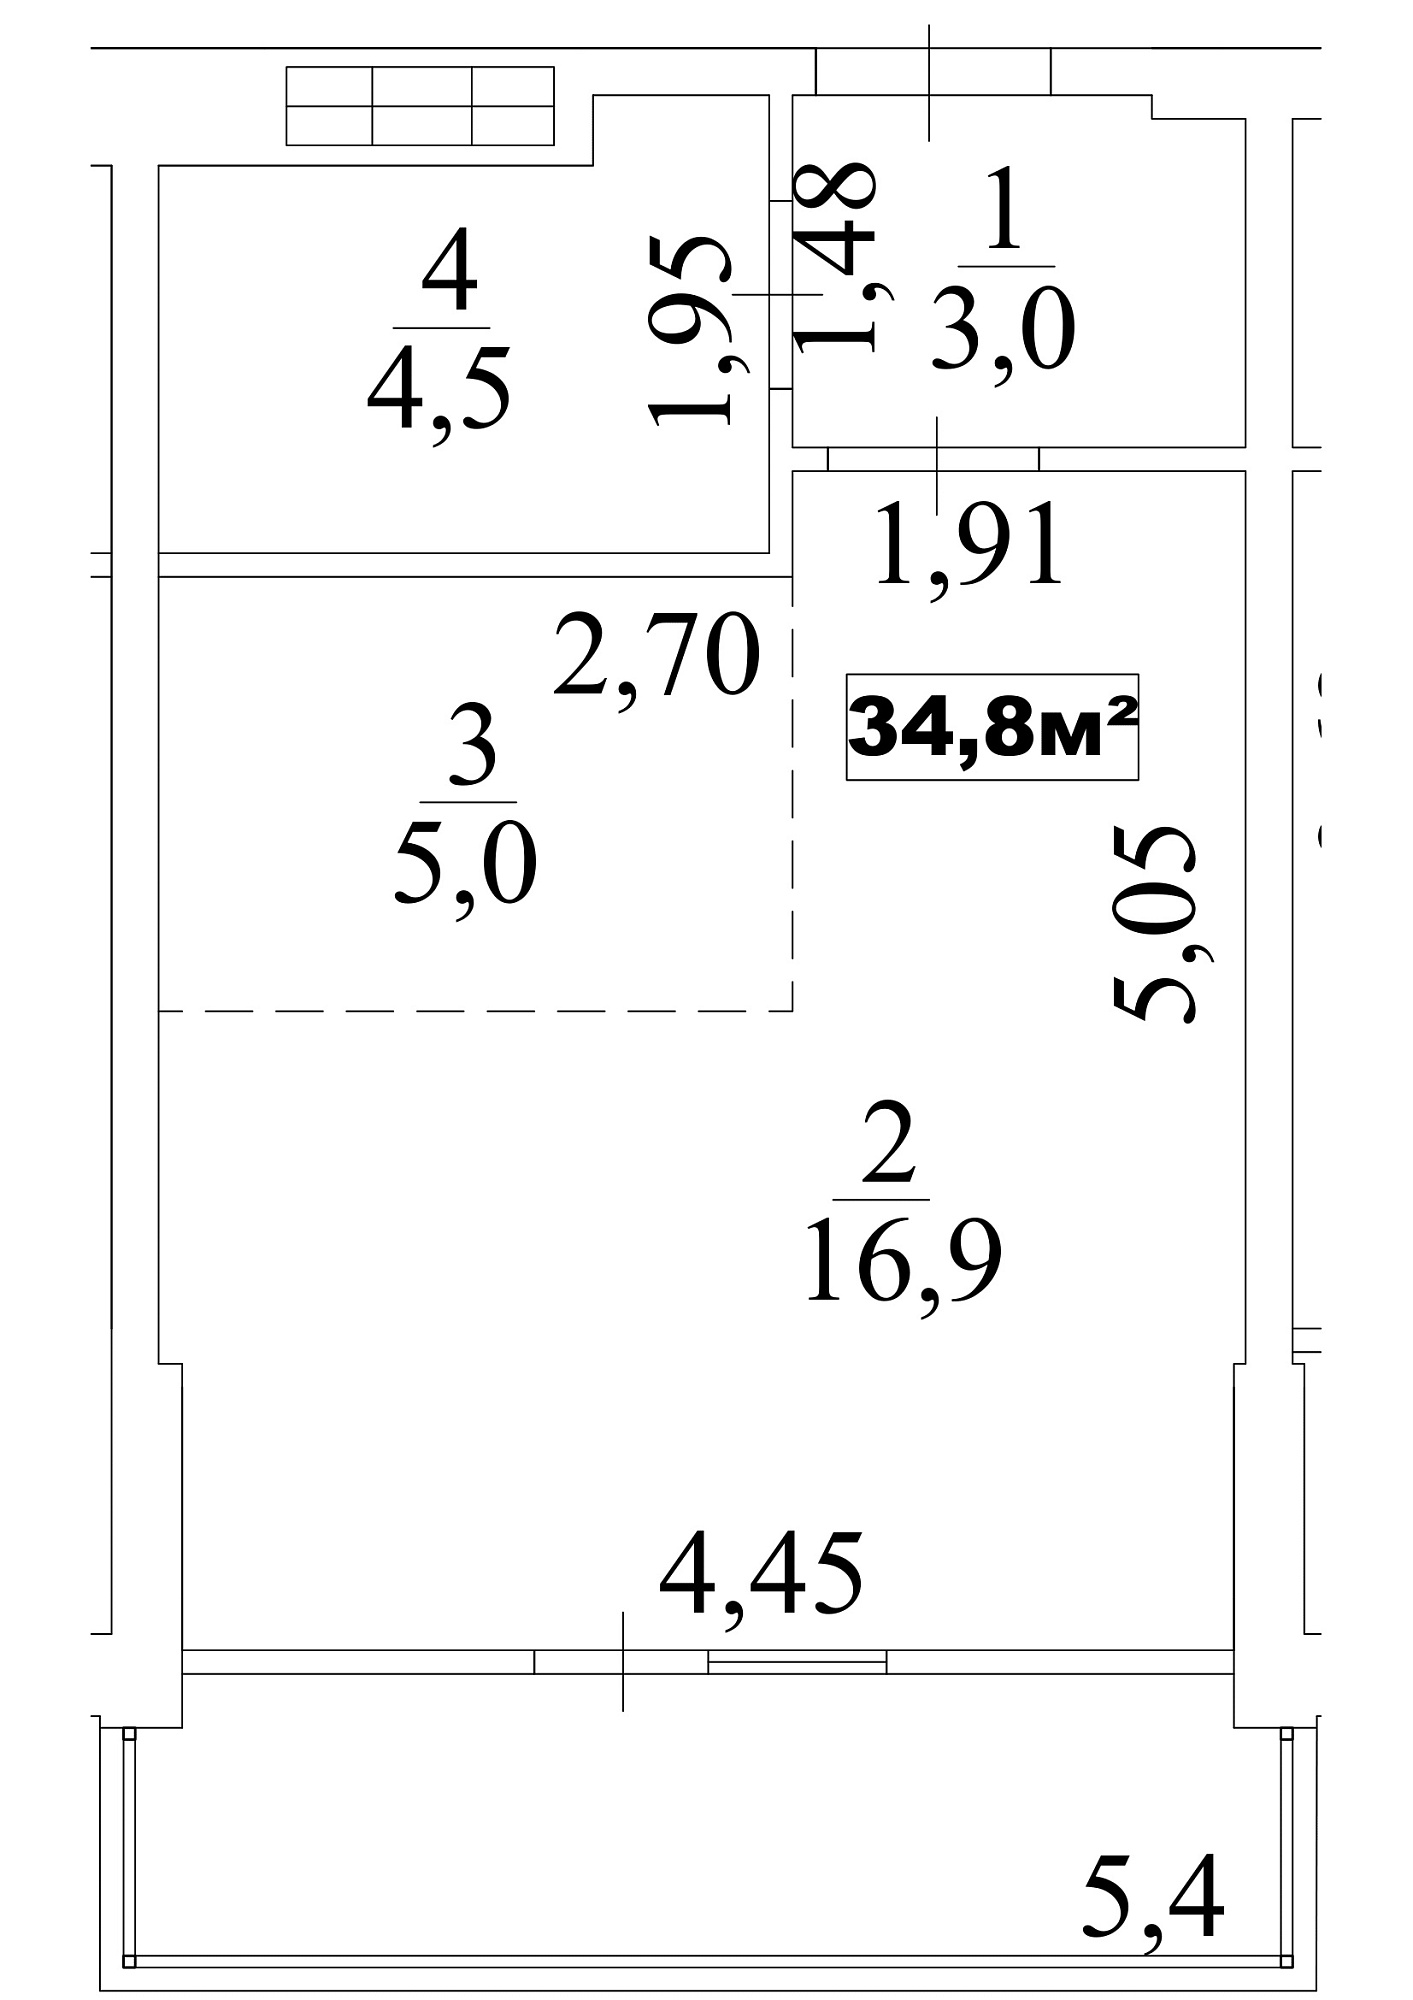 Планування Smart-квартира площею 34.8м2, AB-10-02/0010б.